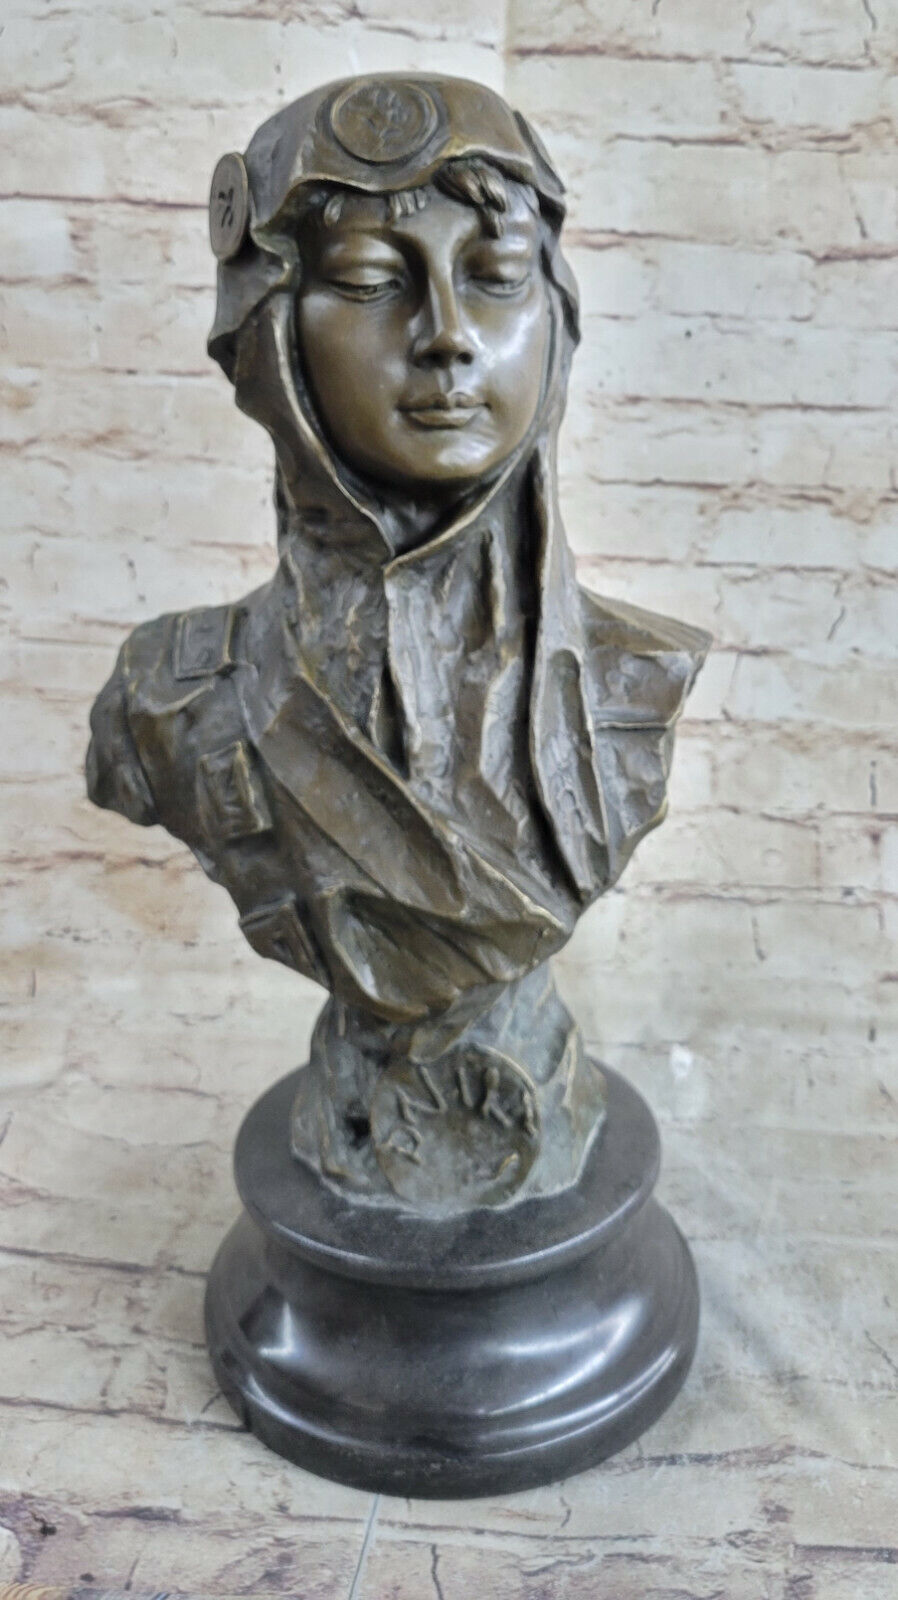 Vintage French Art Nouveau Patinated Bronze Female Bust Sculpture Figurine Decor